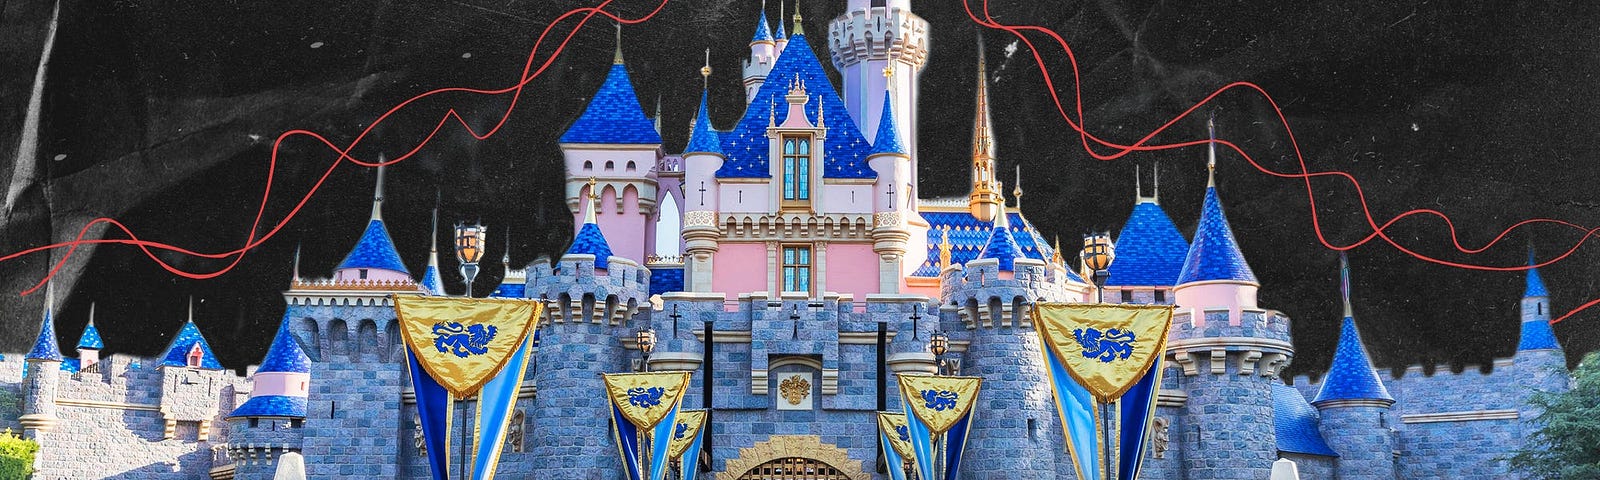 Cinderella’s Castle.